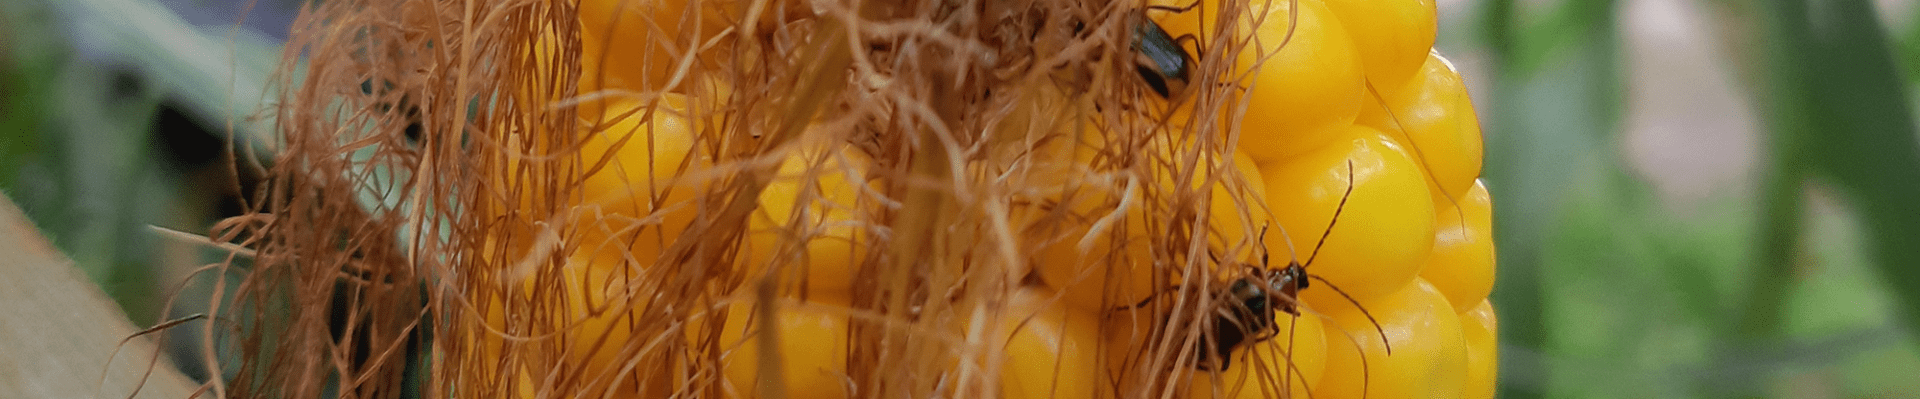 Chrysomèles sur maïs